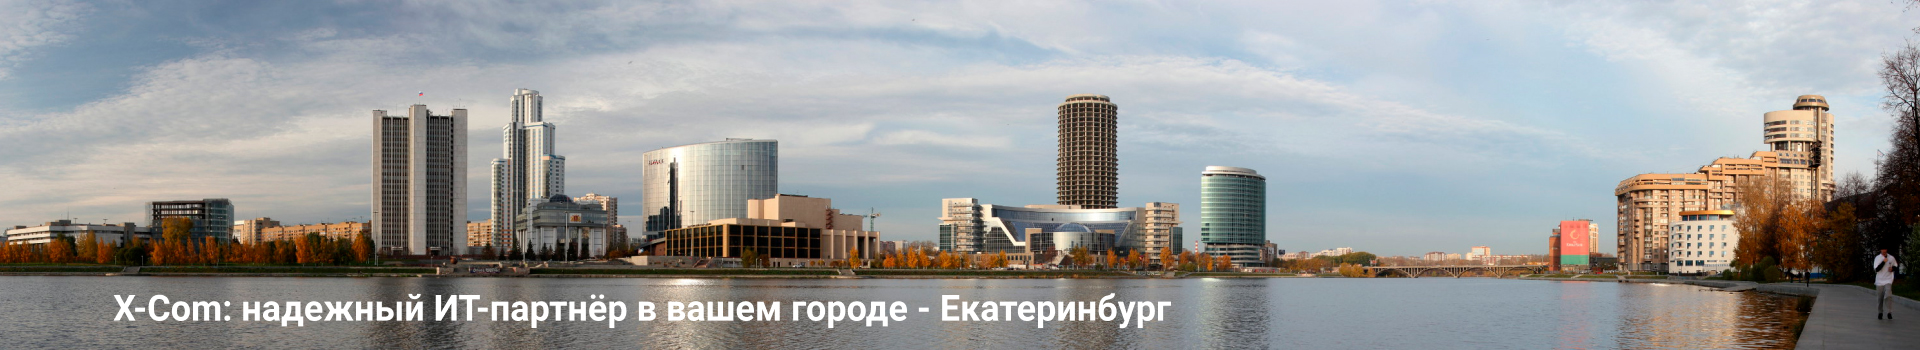 X-Com: надежный ИТ-партнёр в вашем городе - Екатеринбург